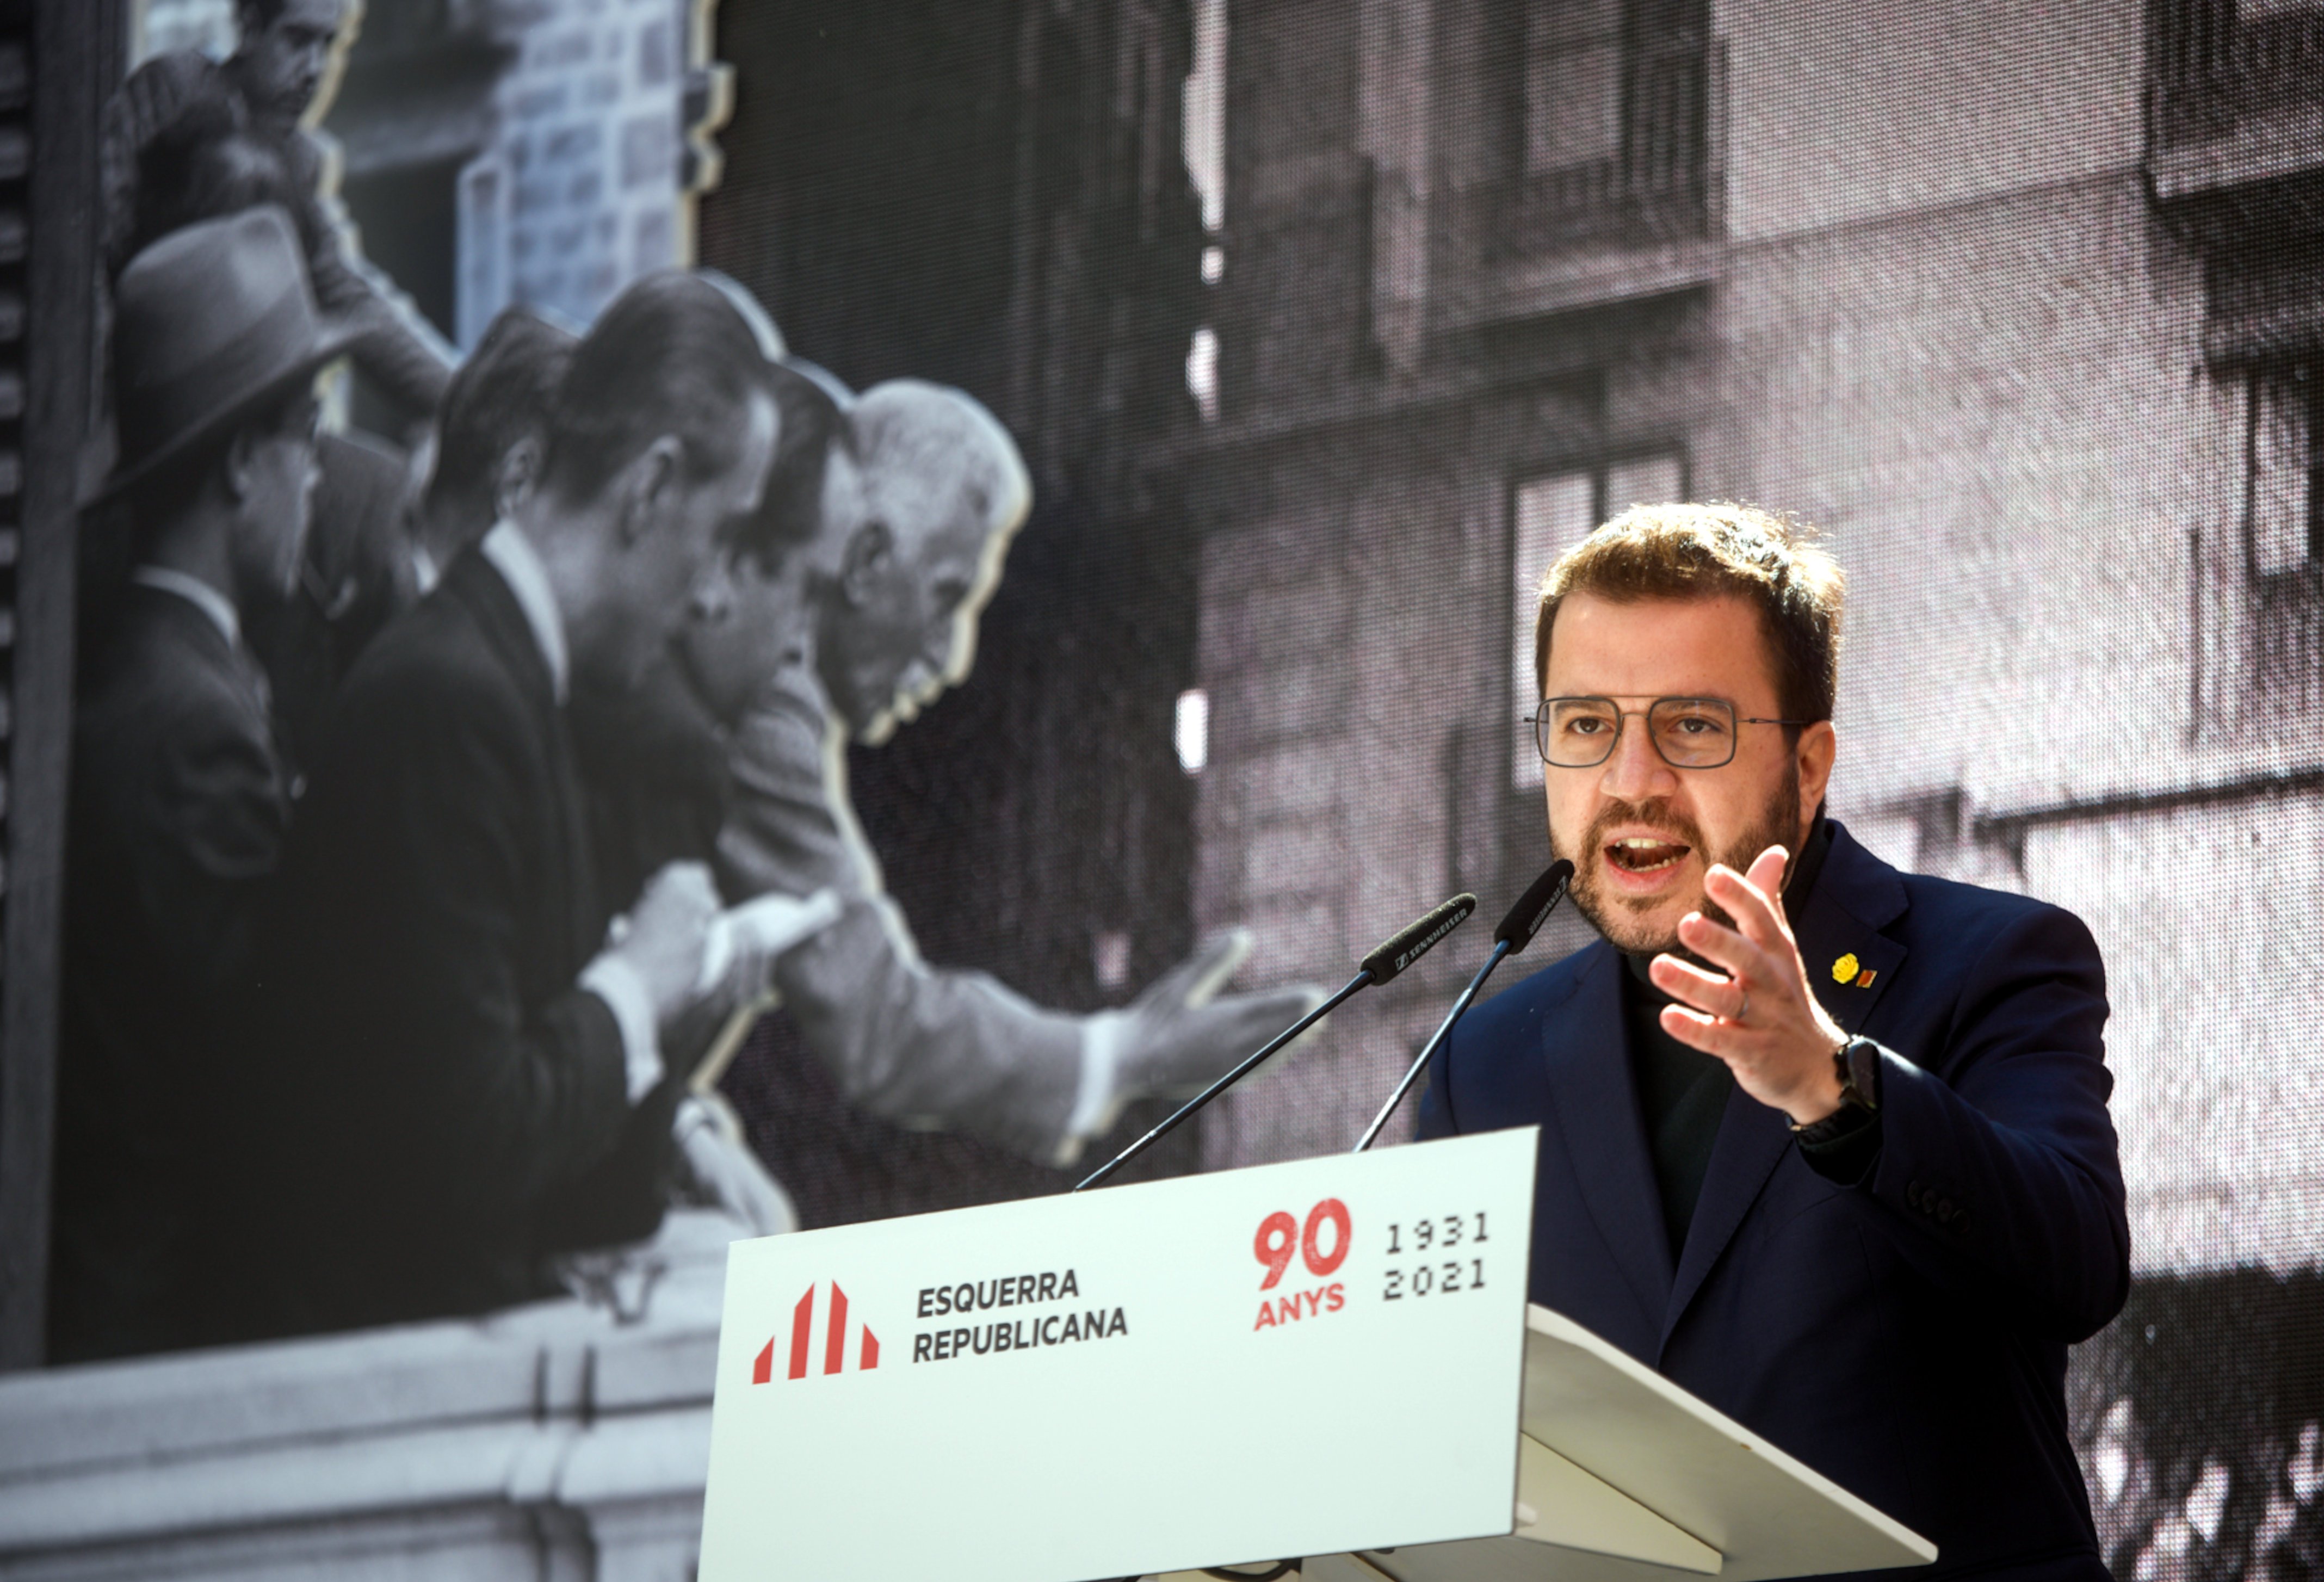 Aragonès reclama construir "sin demora" un Govern fuerte de grandes consensos